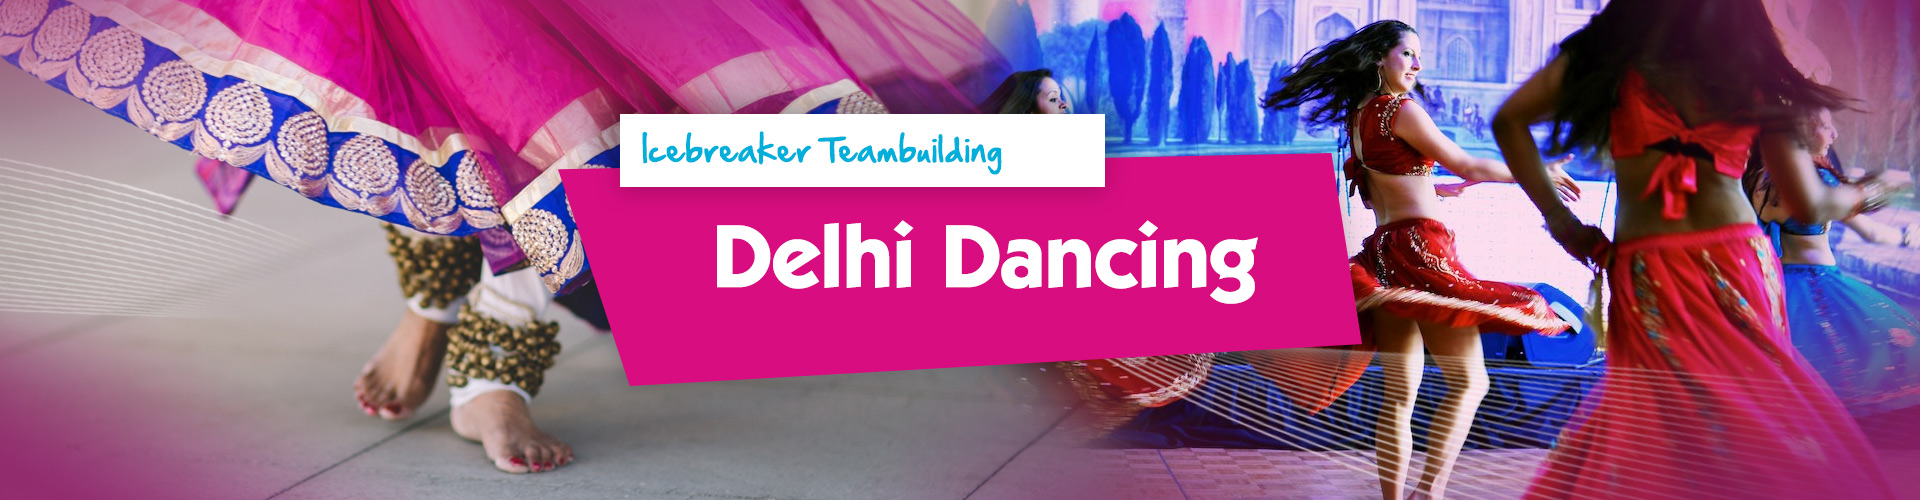 Teambuilding | Delhi Dancing